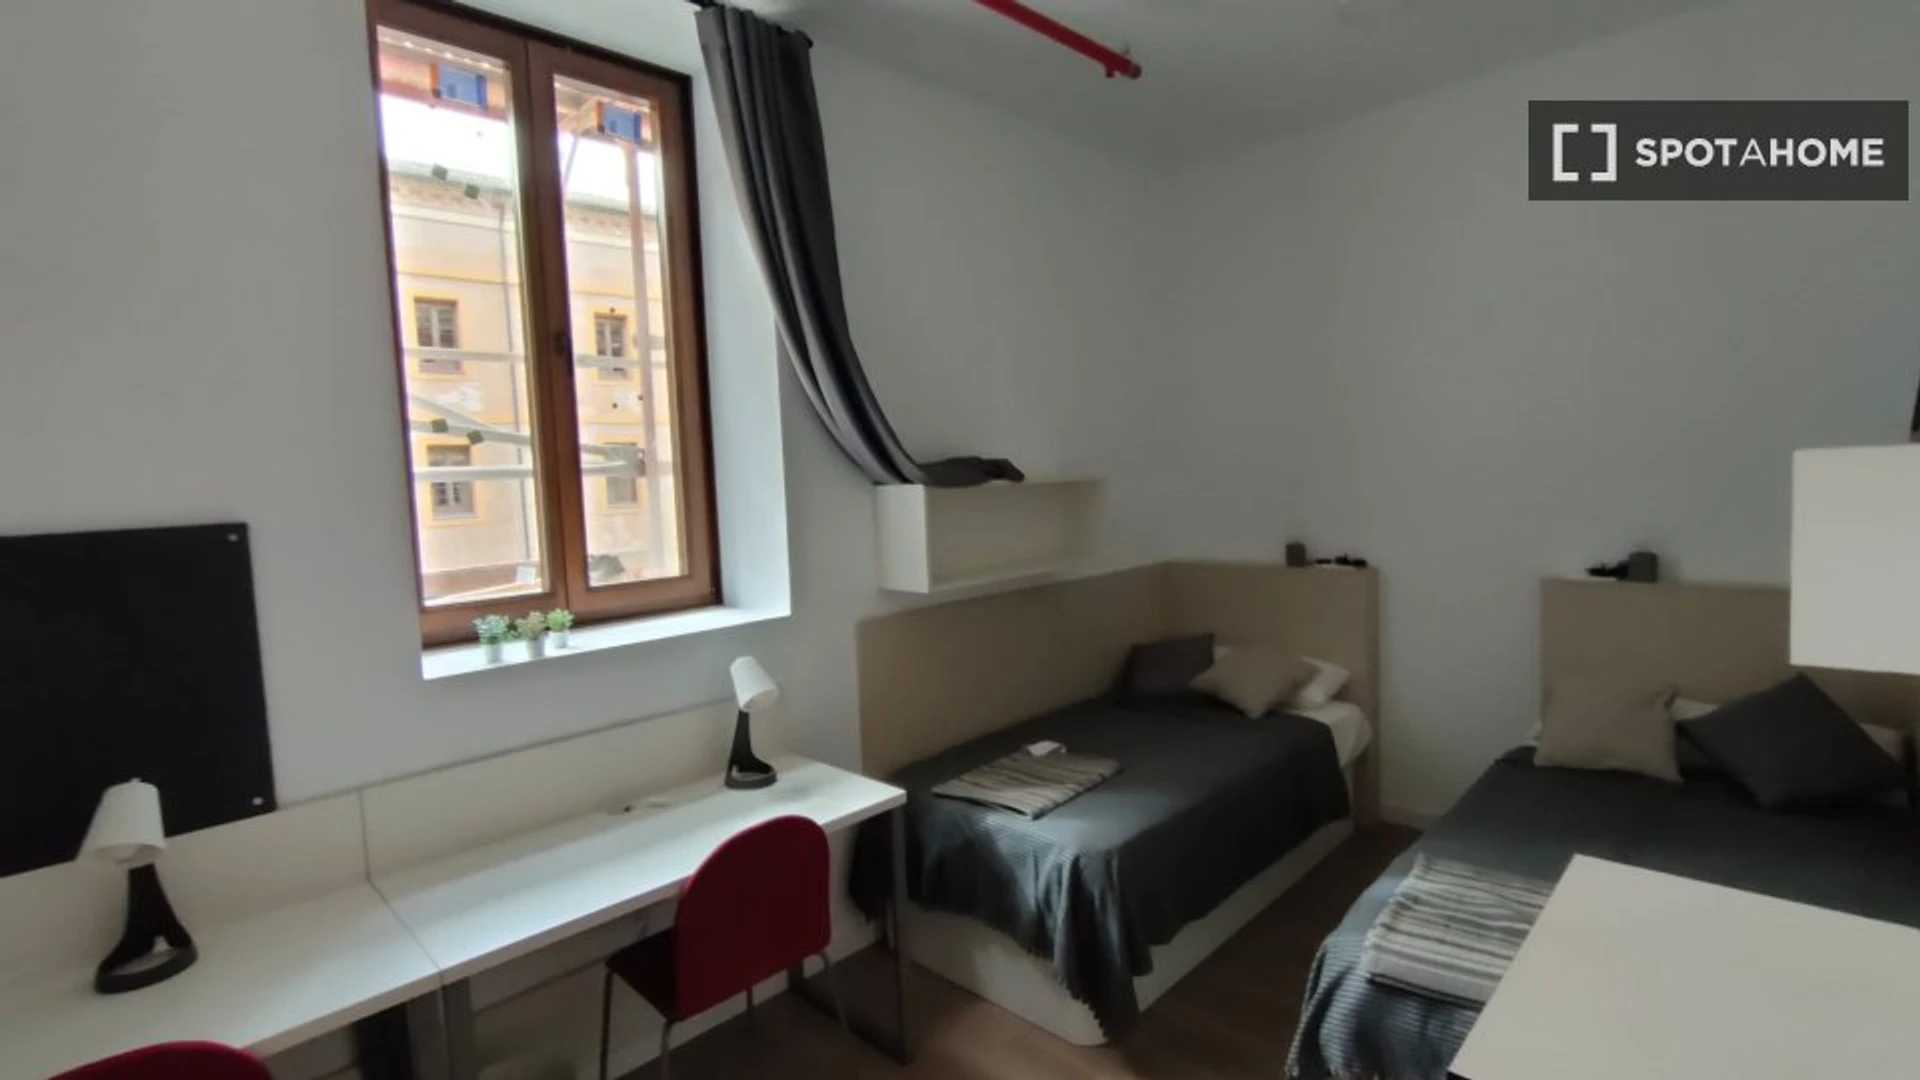 Alquiler de habitaciones por meses en Zaragoza